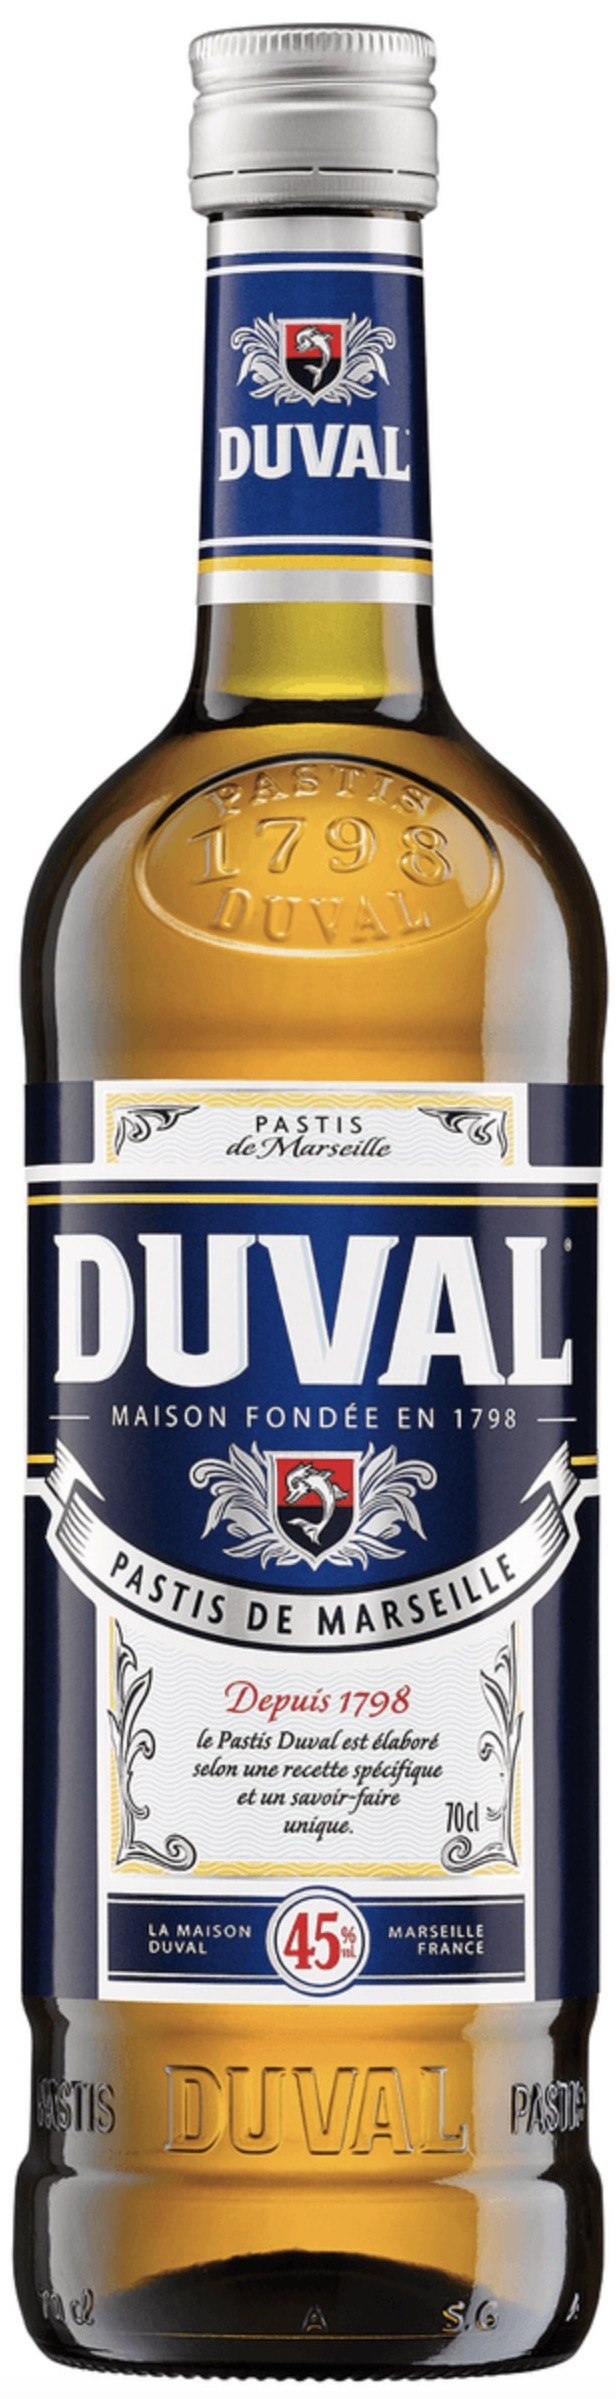 Duval Pastis 45% vol. 0,7L